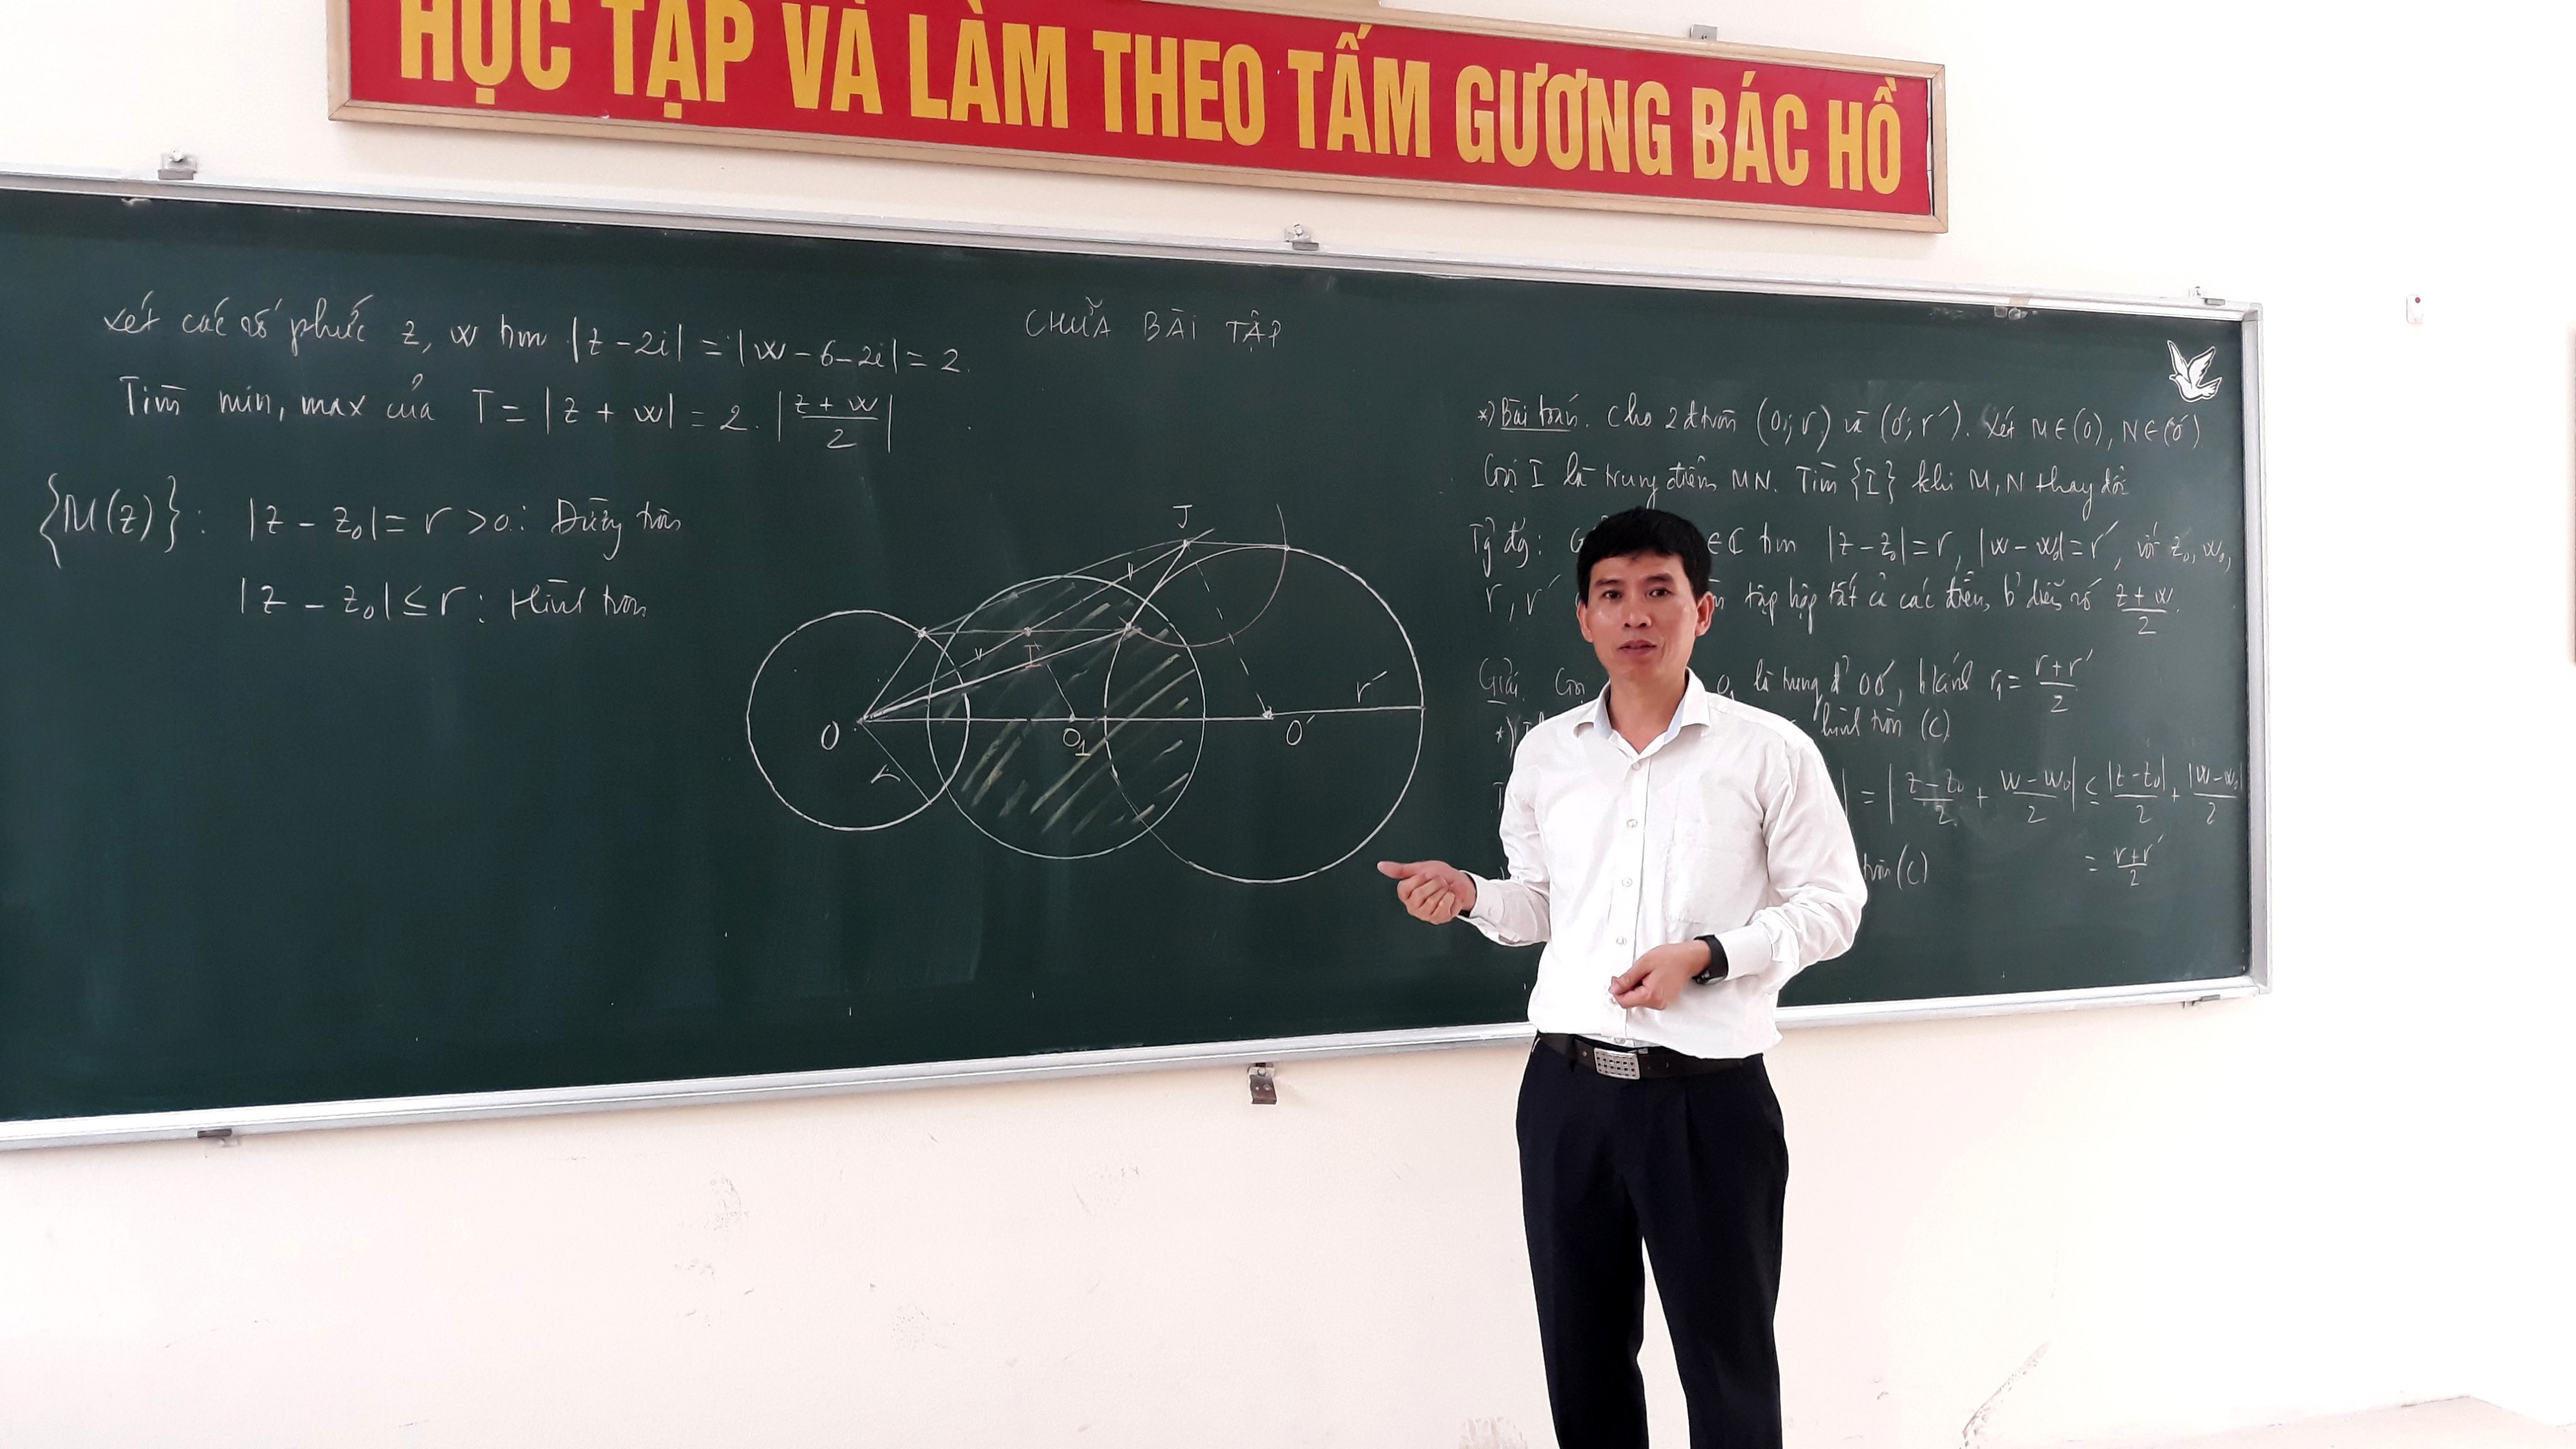 Tiến sỹ Lê Xuân Sơn đã có gần 30 năm gắn bó với Trường THPT chuyên Đại học Vinh và có hàng chục học sinh đạt giải cao tại các Kỳ thi học sinh giỏi quốc gia, quốc tế. Ảnh: MH